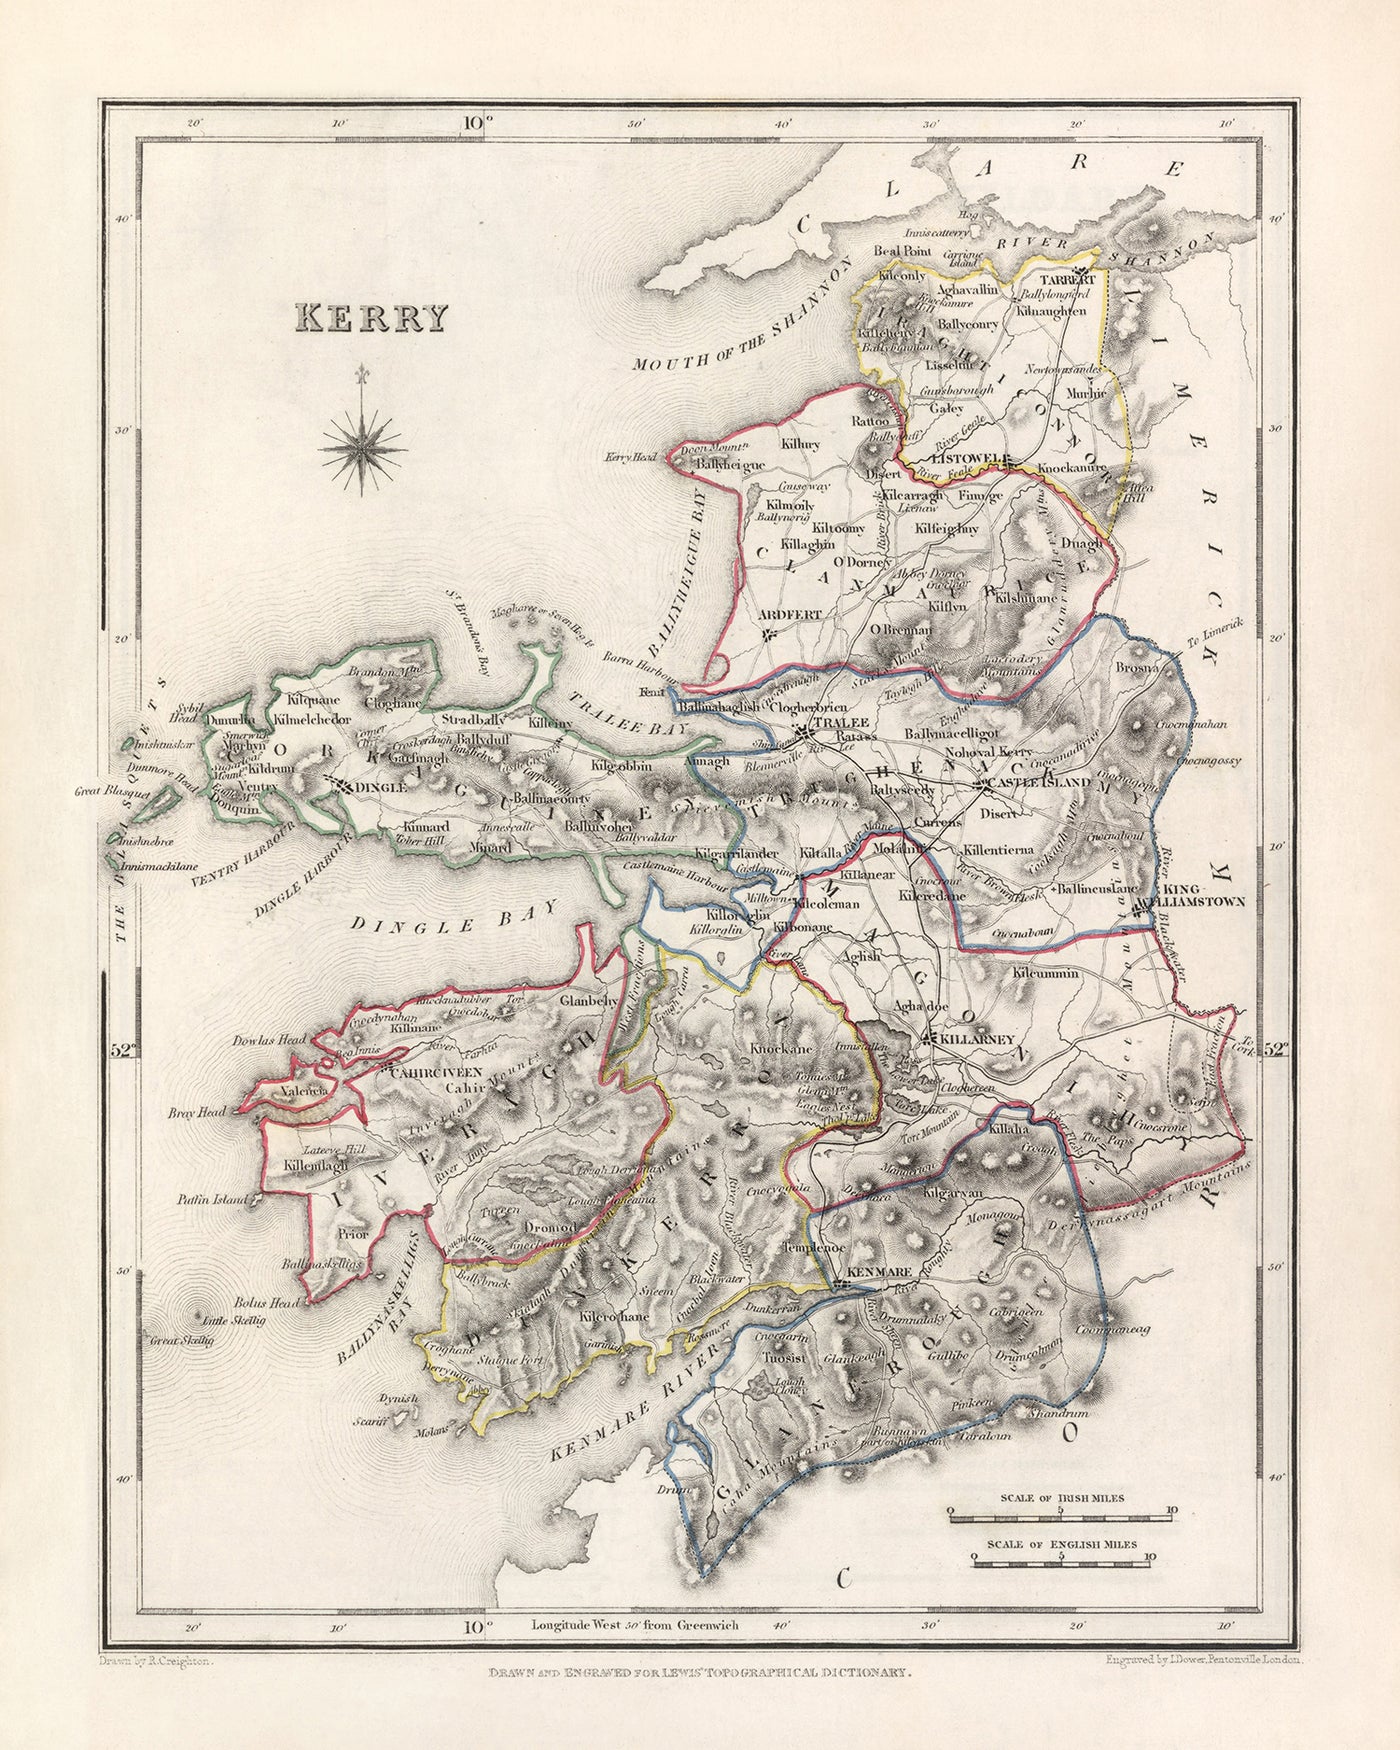 Ancienne carte du comté de Kerry par Samuel Lewis, 1844 : Tralee, Killarney, Dingle, Kenmare et Listowel